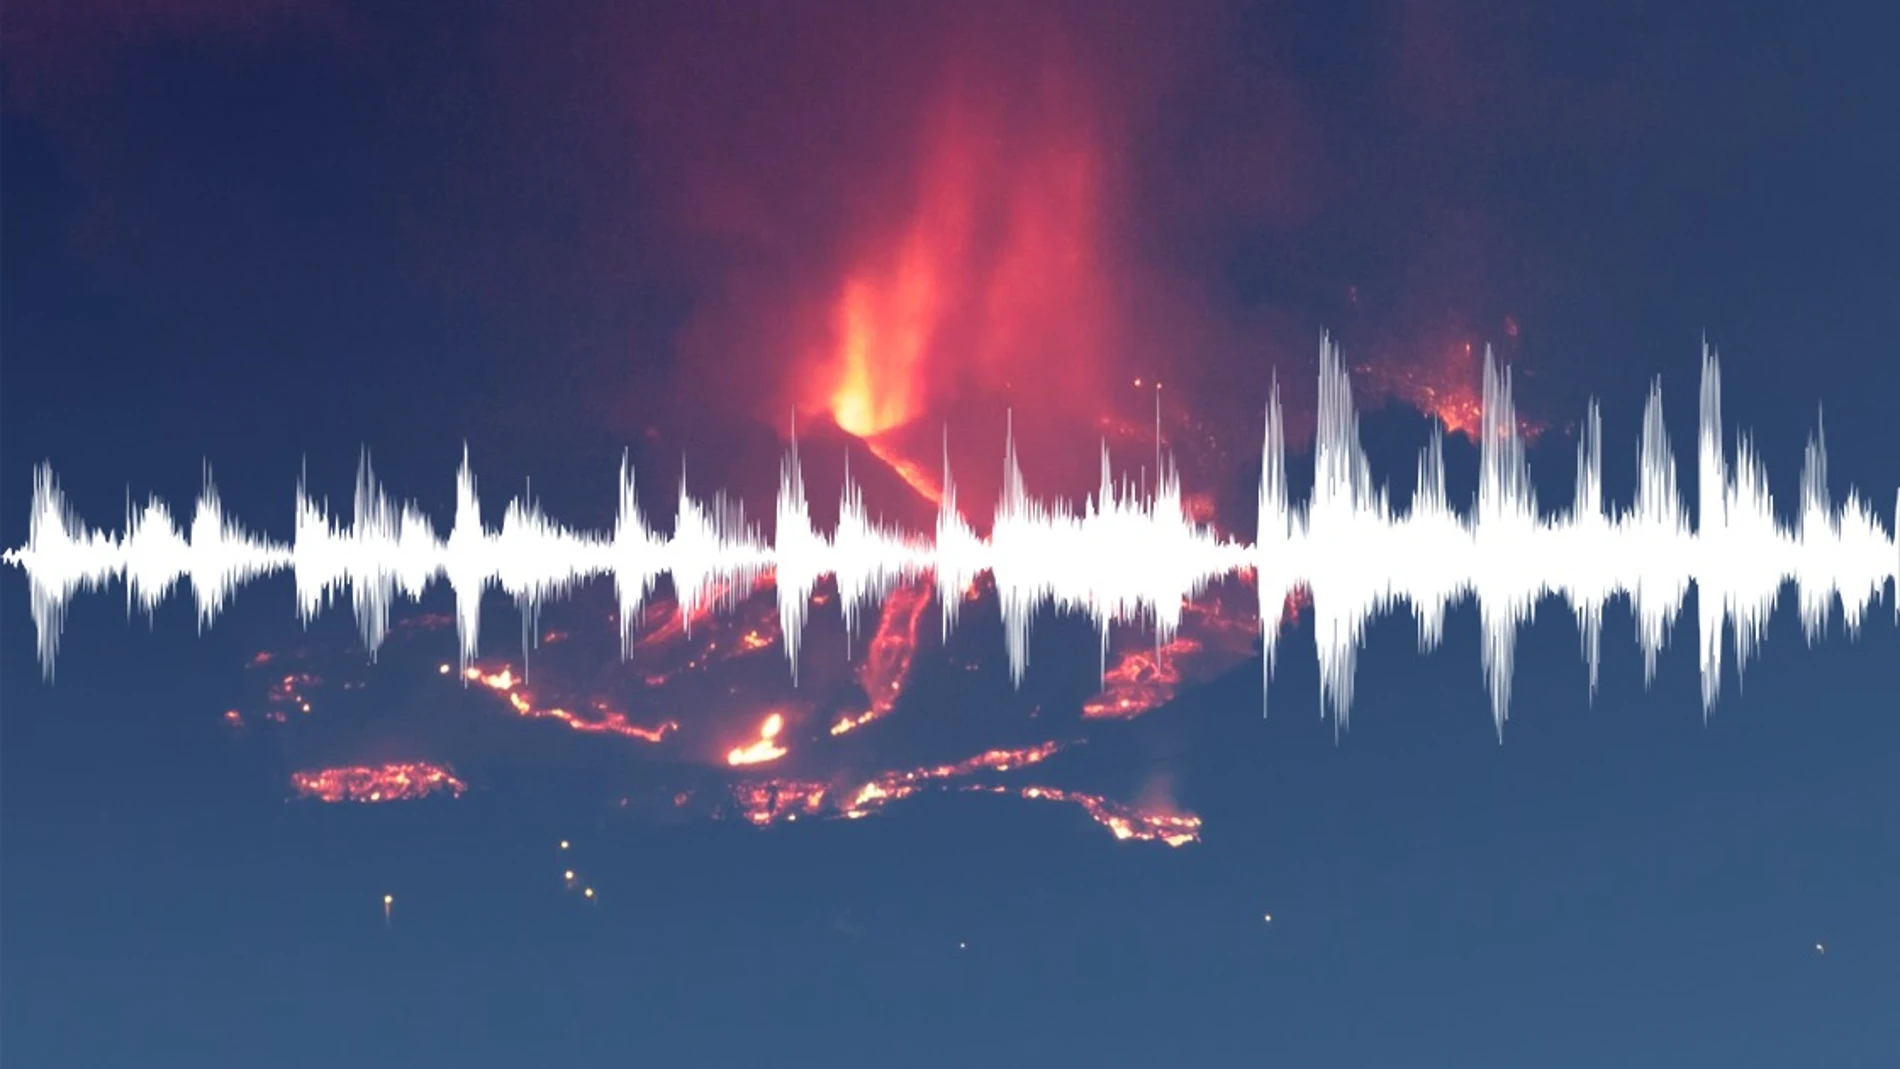 Sonido del rugido del volcán en La Palma